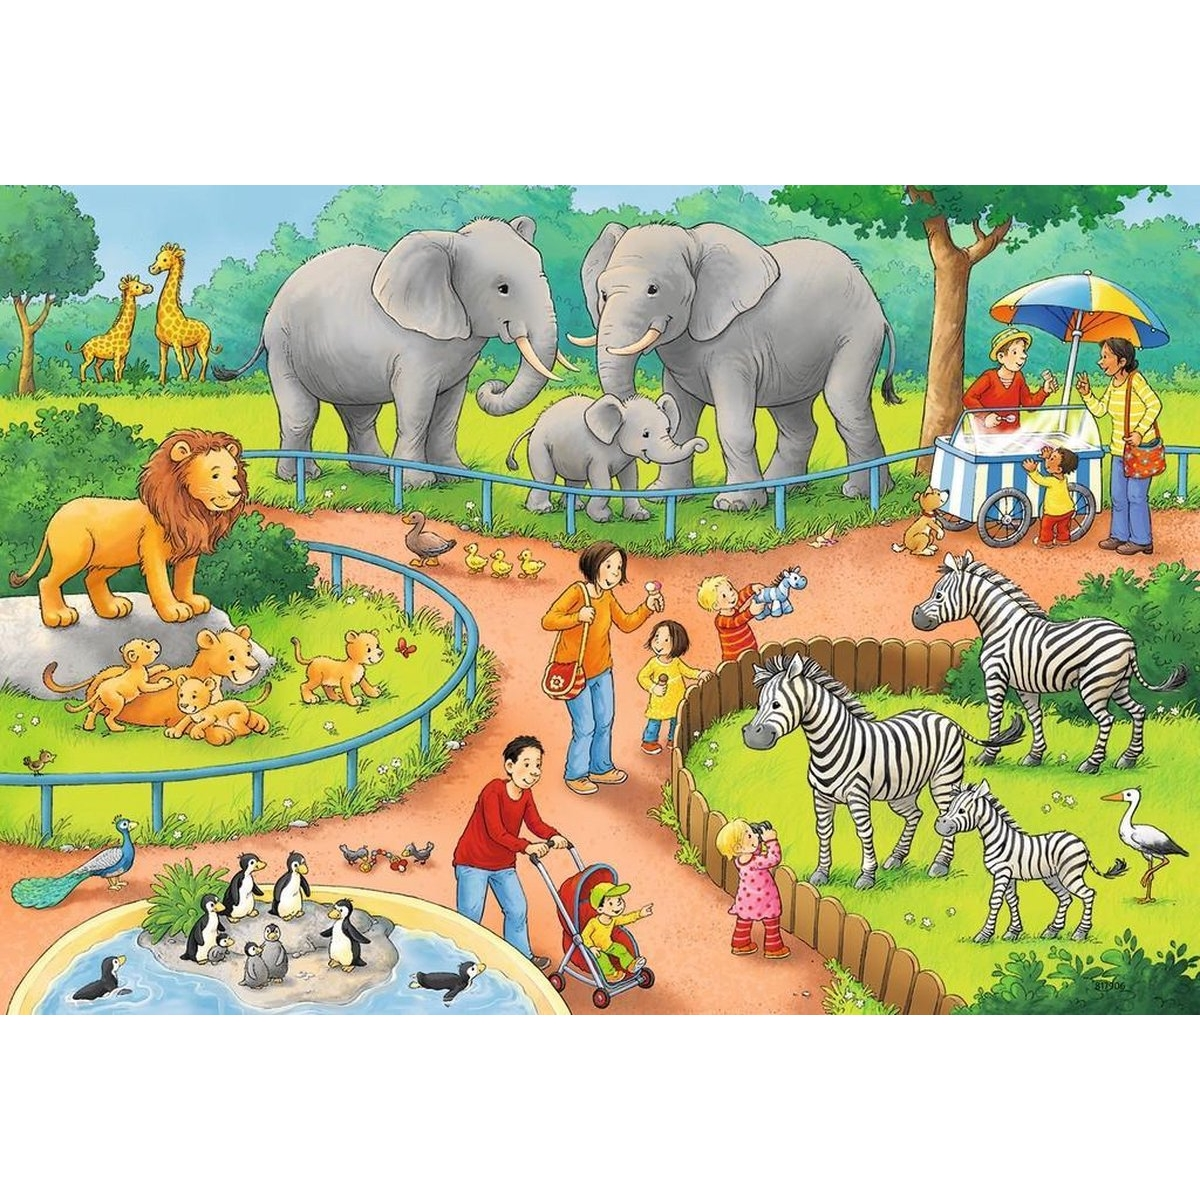 RAVENSBURGER Ein Tag im Zoo Puzzle